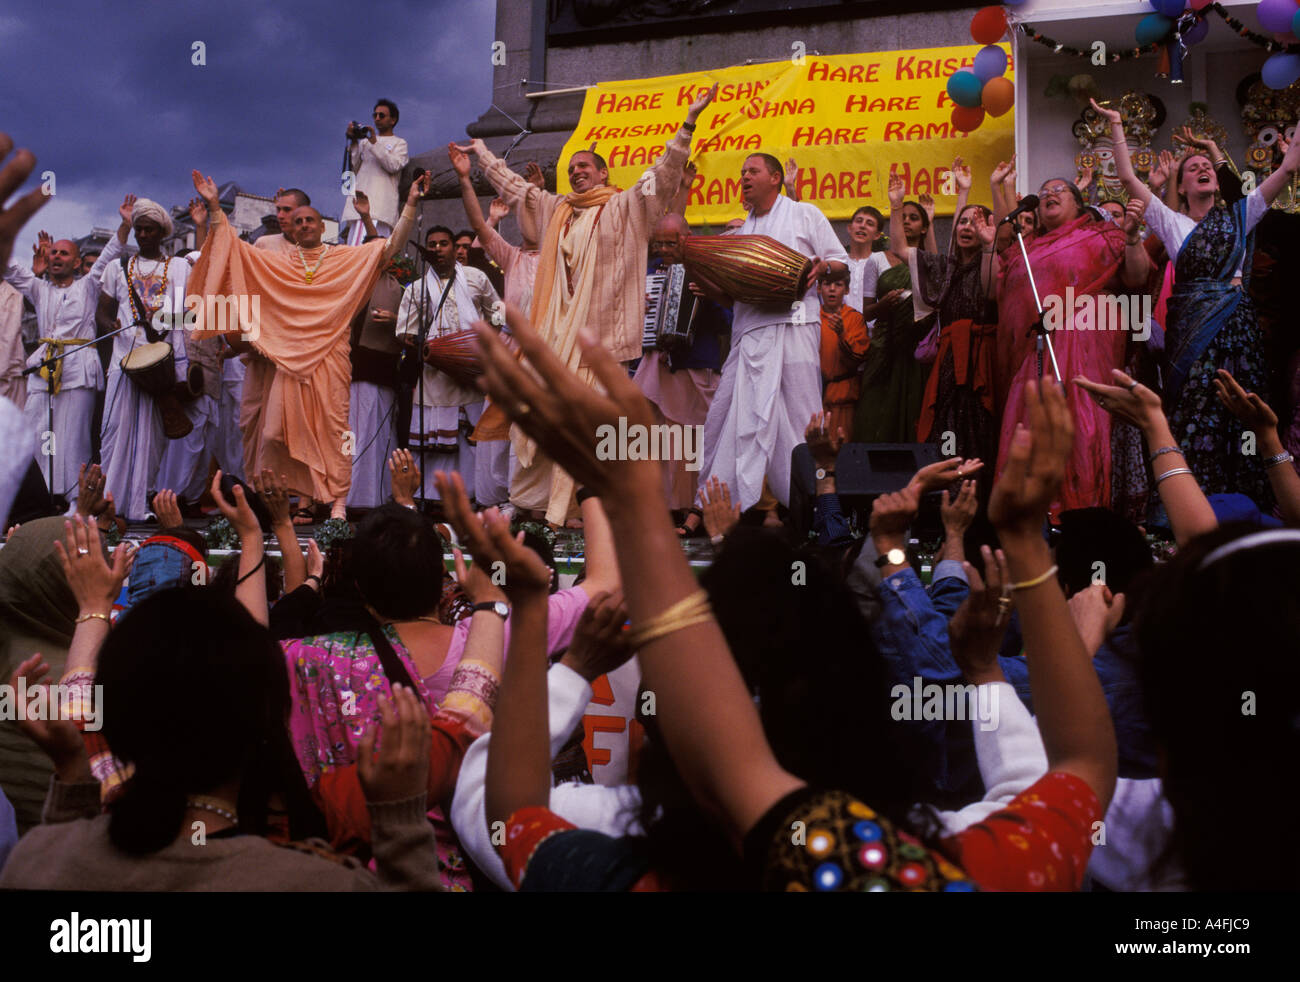 Hindu UK Festival Londres. Les dévots de Radha Krishna se rassemblent à Trafalgar Square pour célébrer le Festival chariot des années 2004 2000 Angleterre HOMER SYKES Banque D'Images